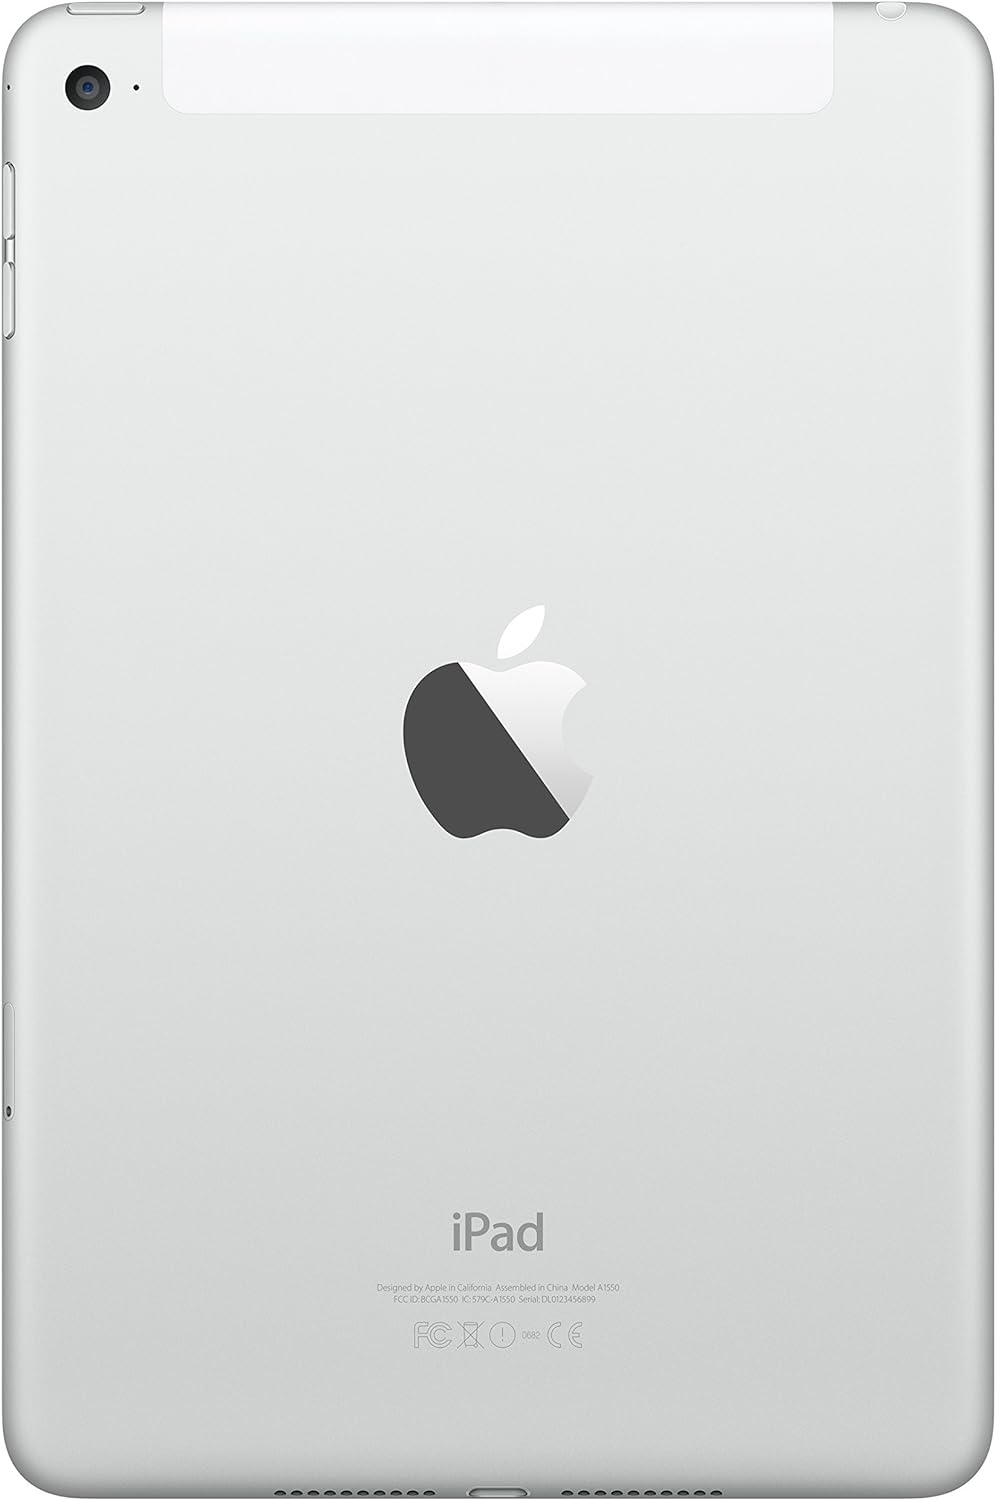 iPad mini 4 16GB Silver WiFi + Cellular(Renewed)